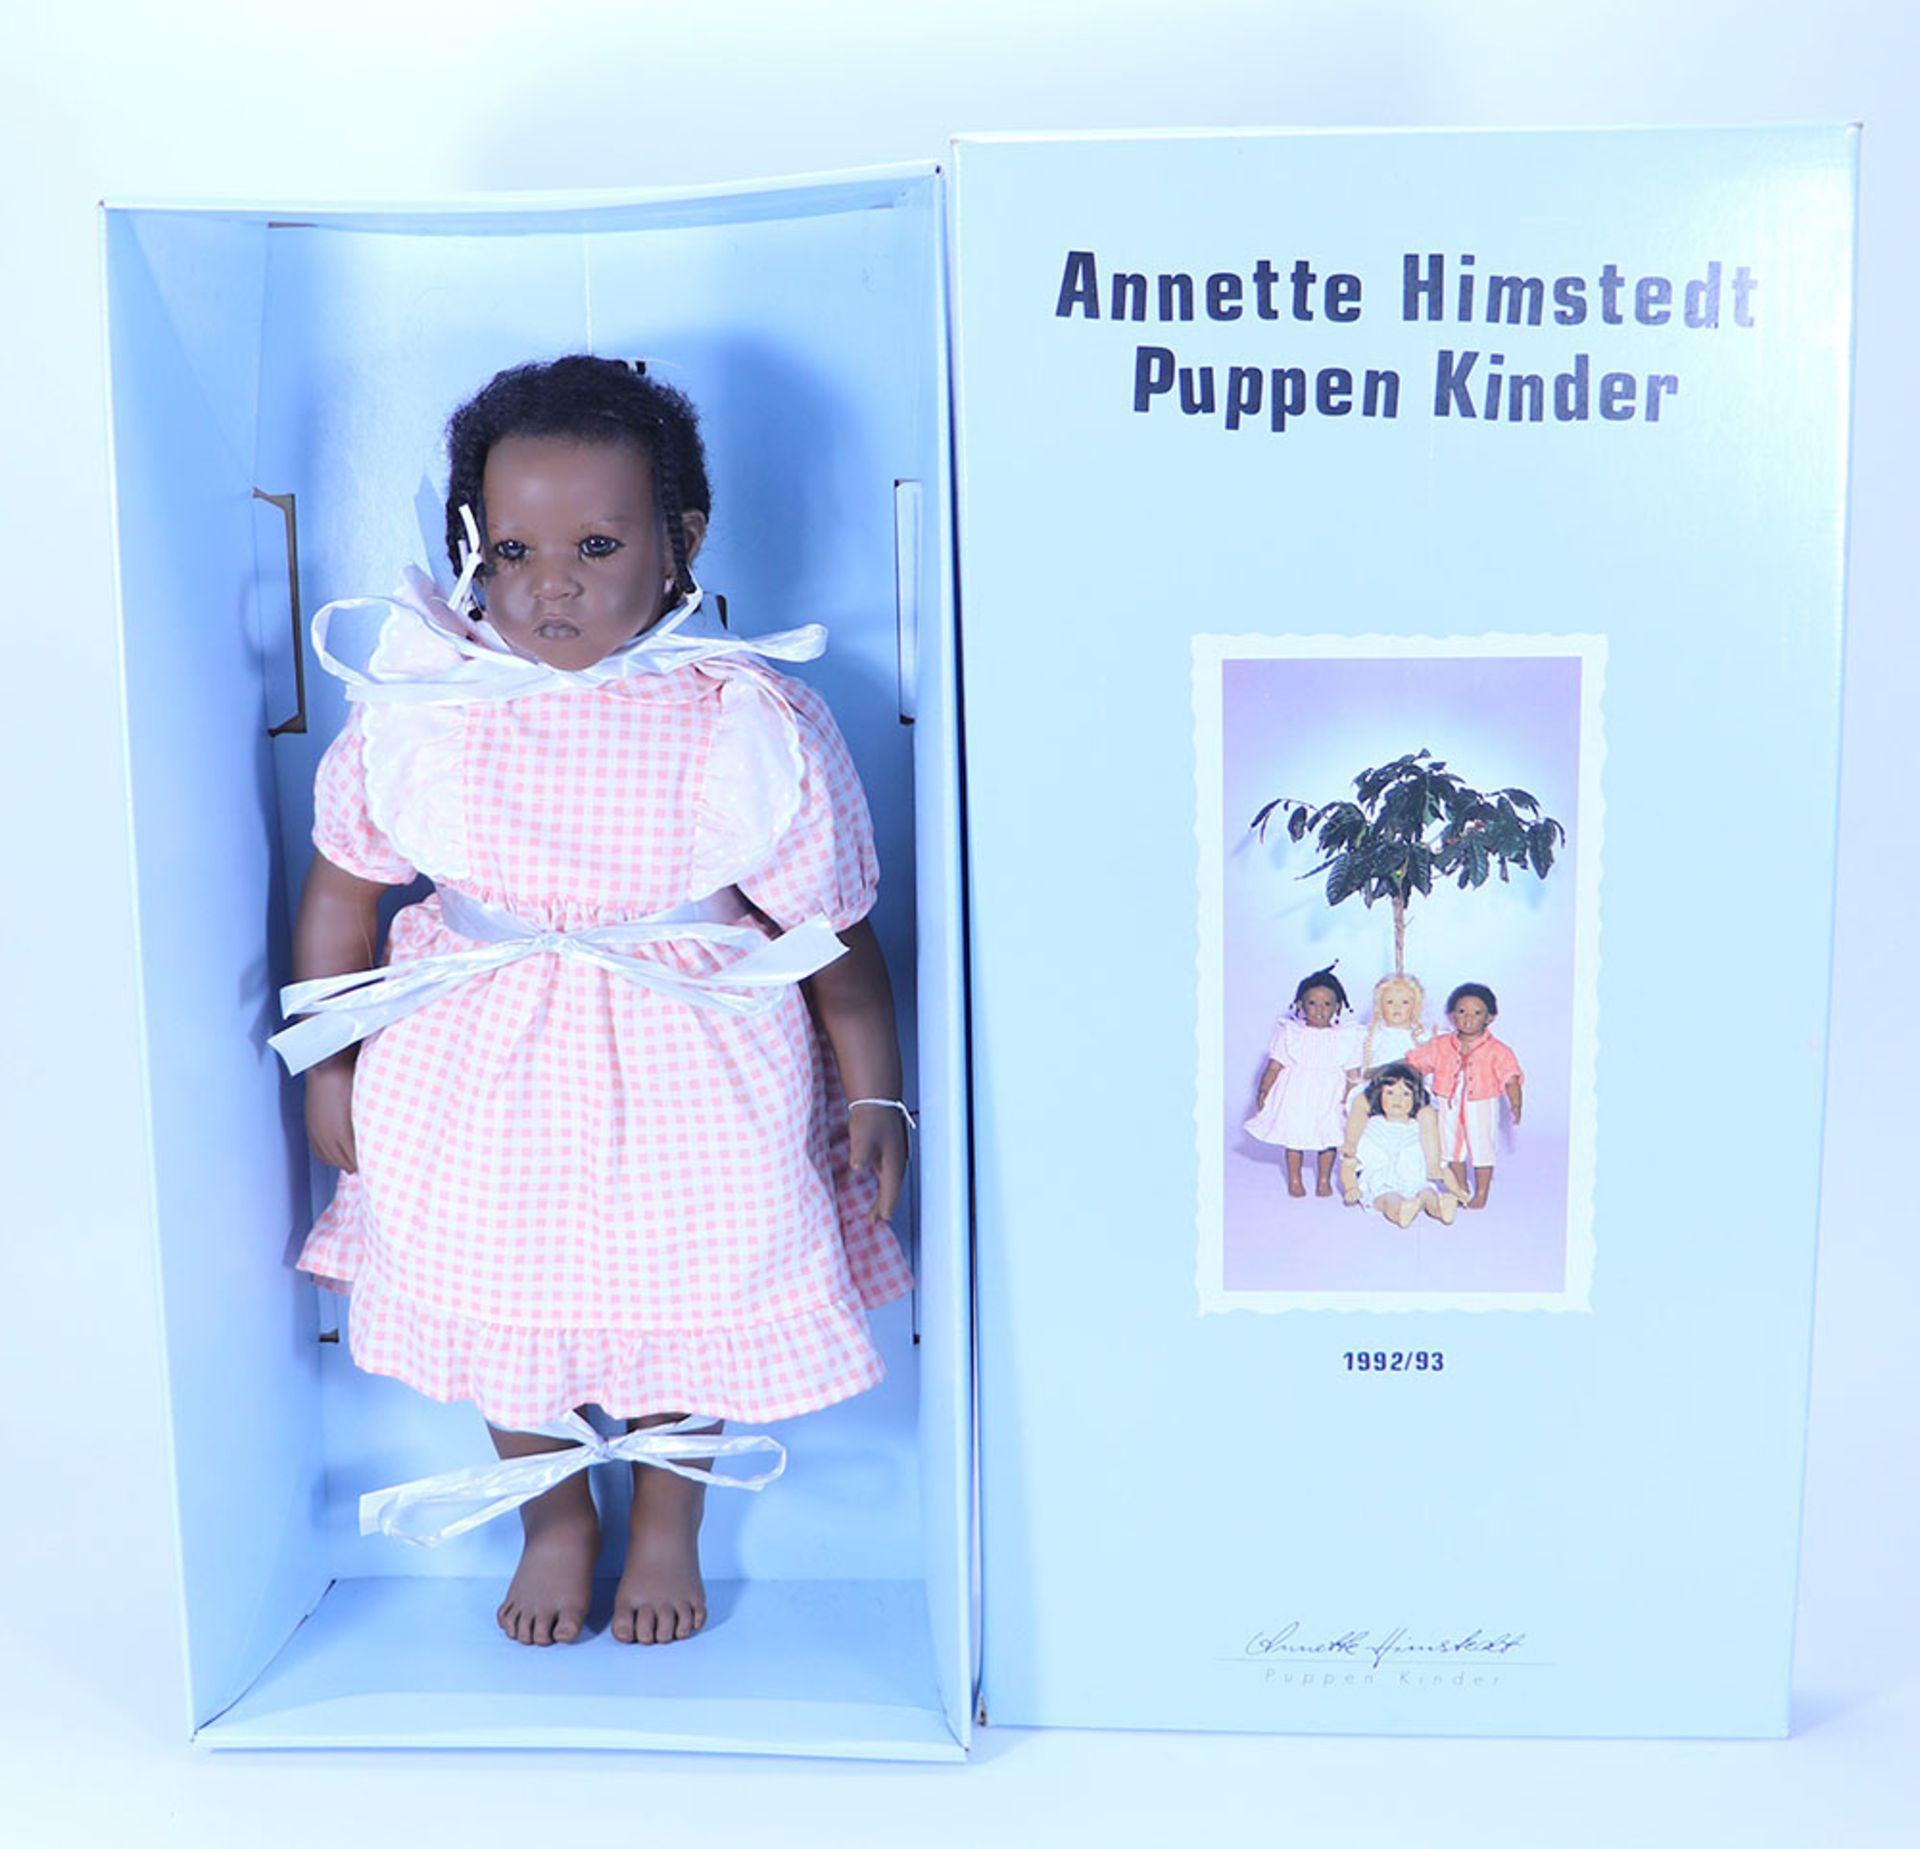 An Annette Himstedt Puppen Kinder Artist Doll Sanga, 1992/93,